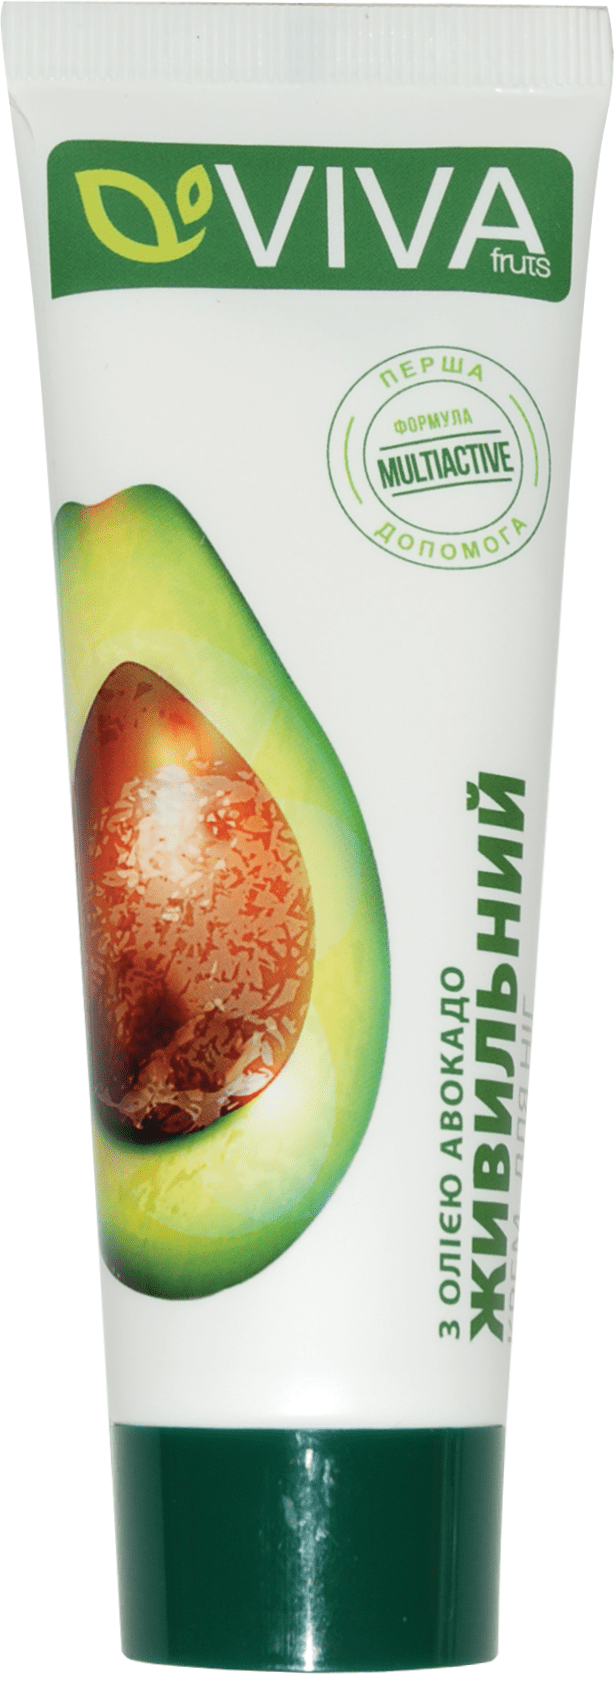 Крем для ног VIVAfruts питательный с маслом авокадо, 75 г